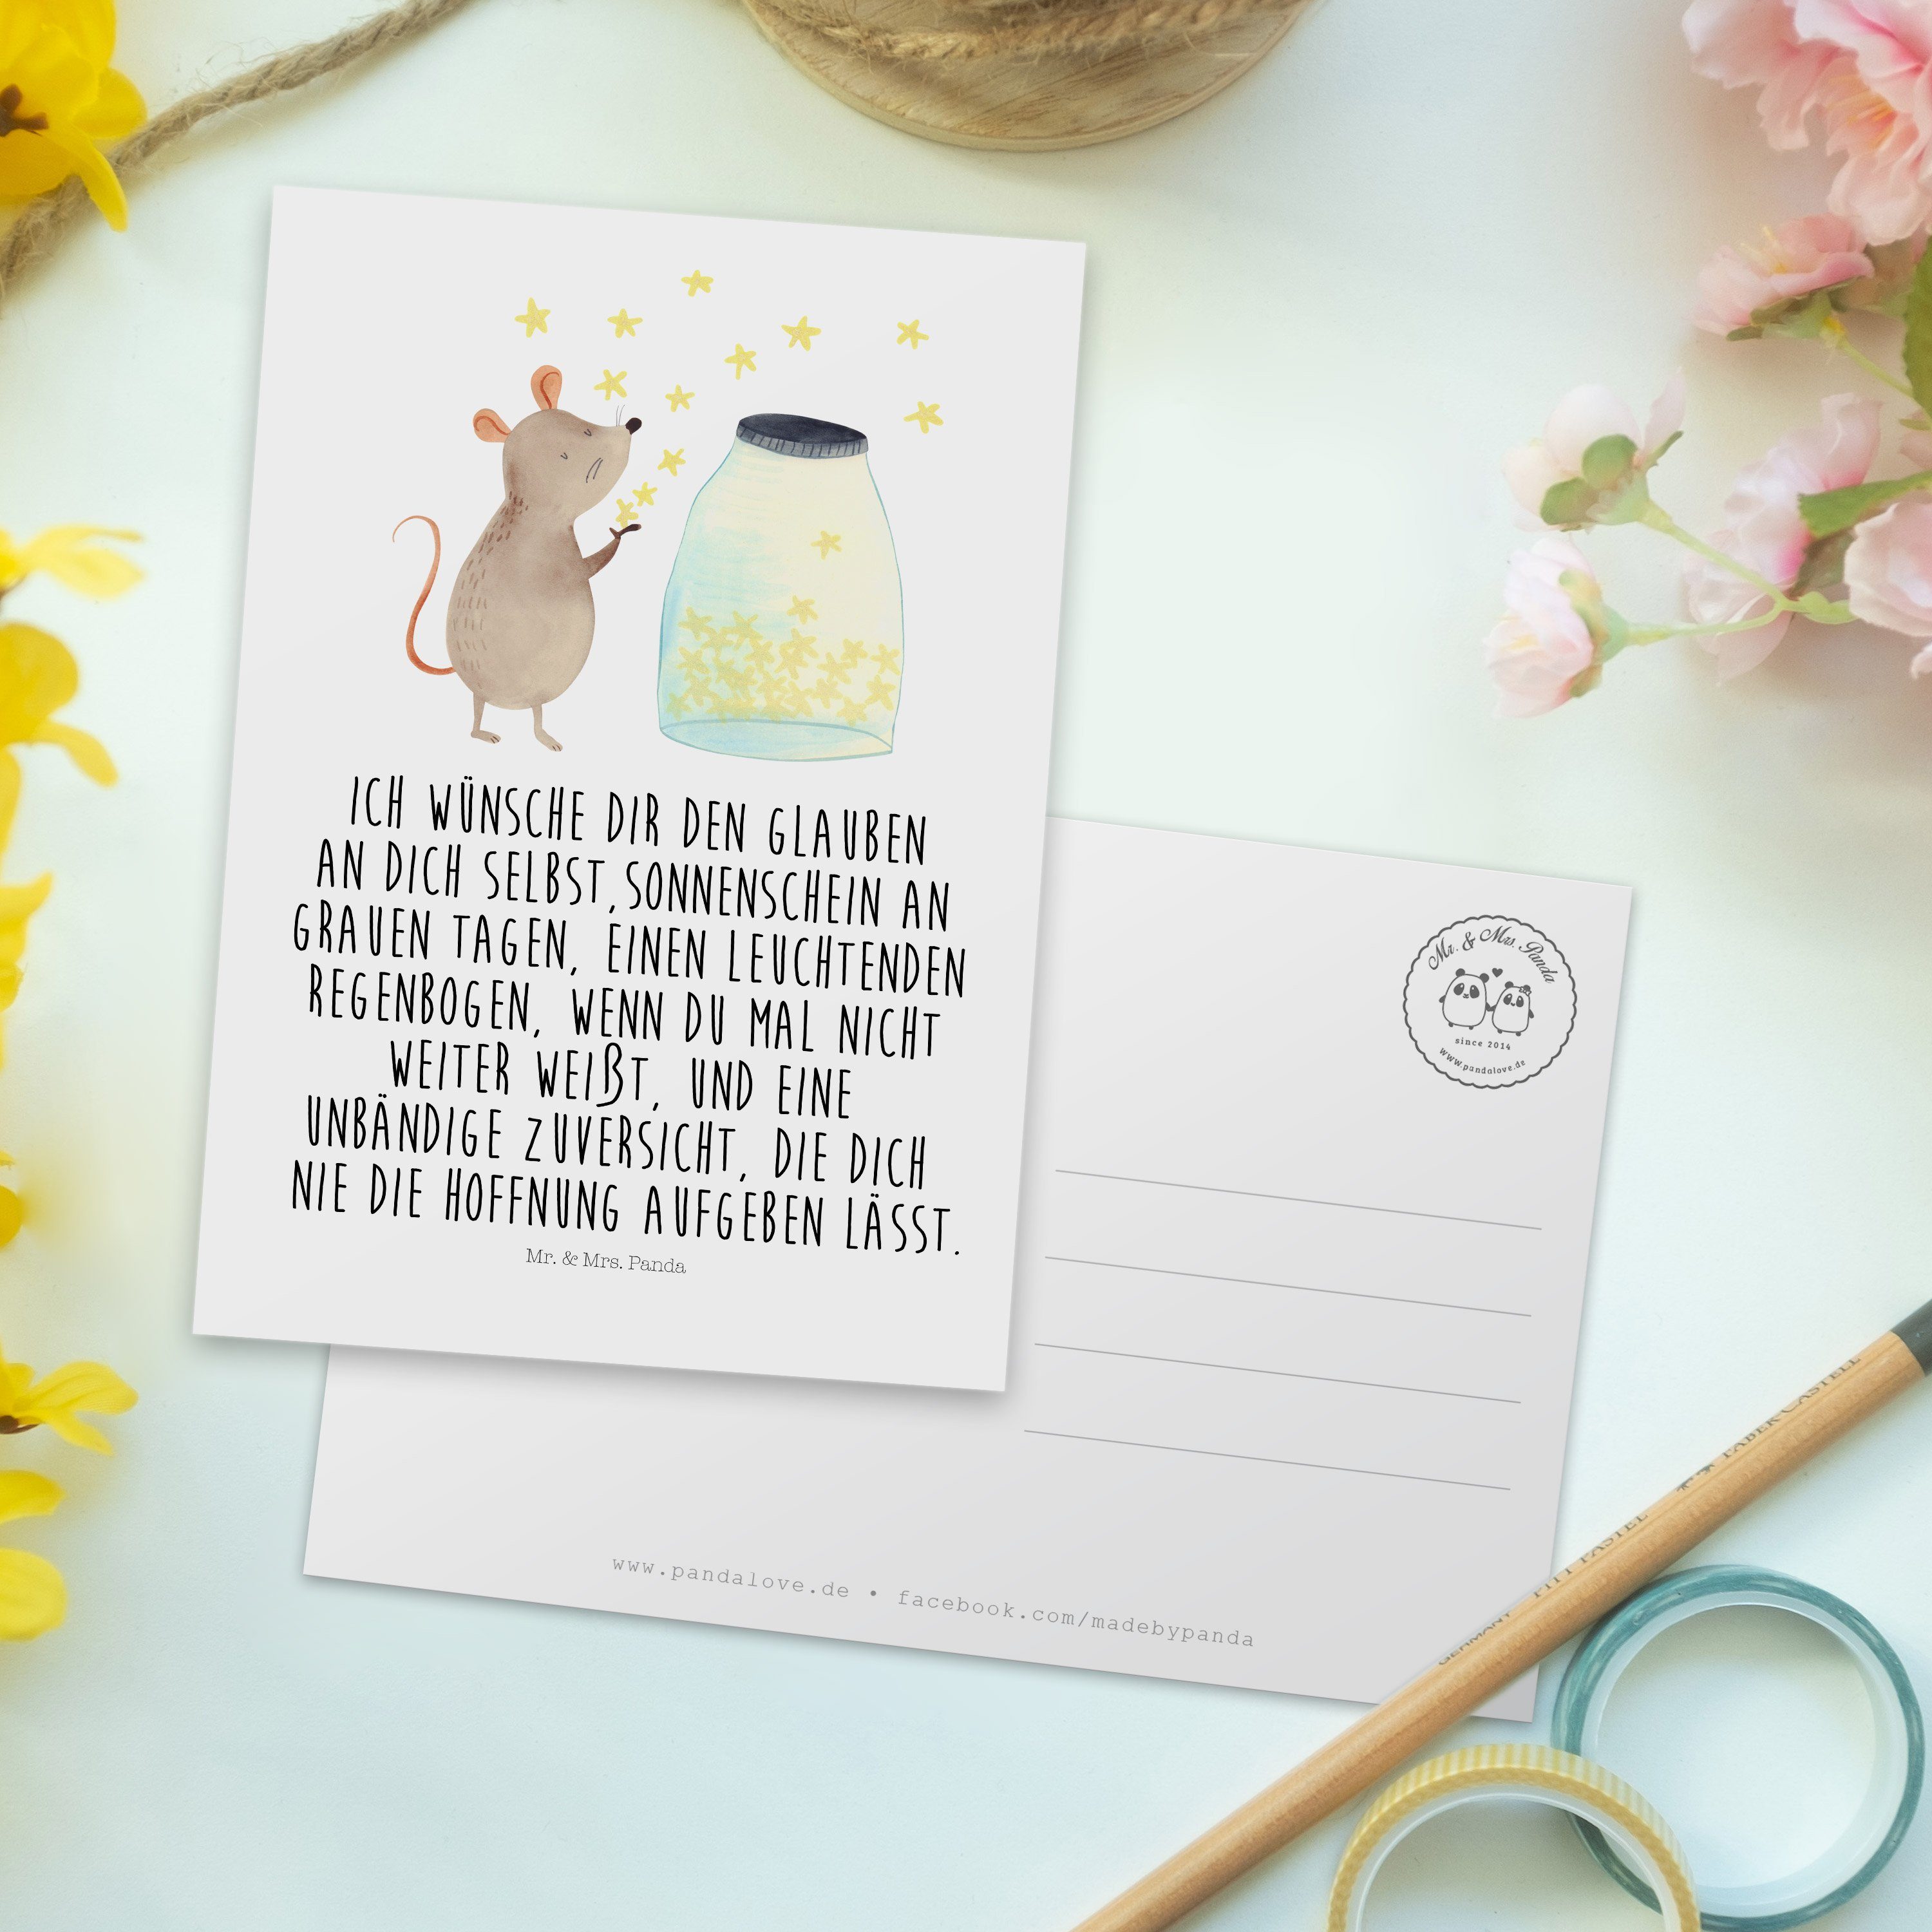 Mr. & Mrs. Panda - Geschenk, lustige Maus Postkarte Gute - Weiß Sterne Laune, Geburtsta Sprüche